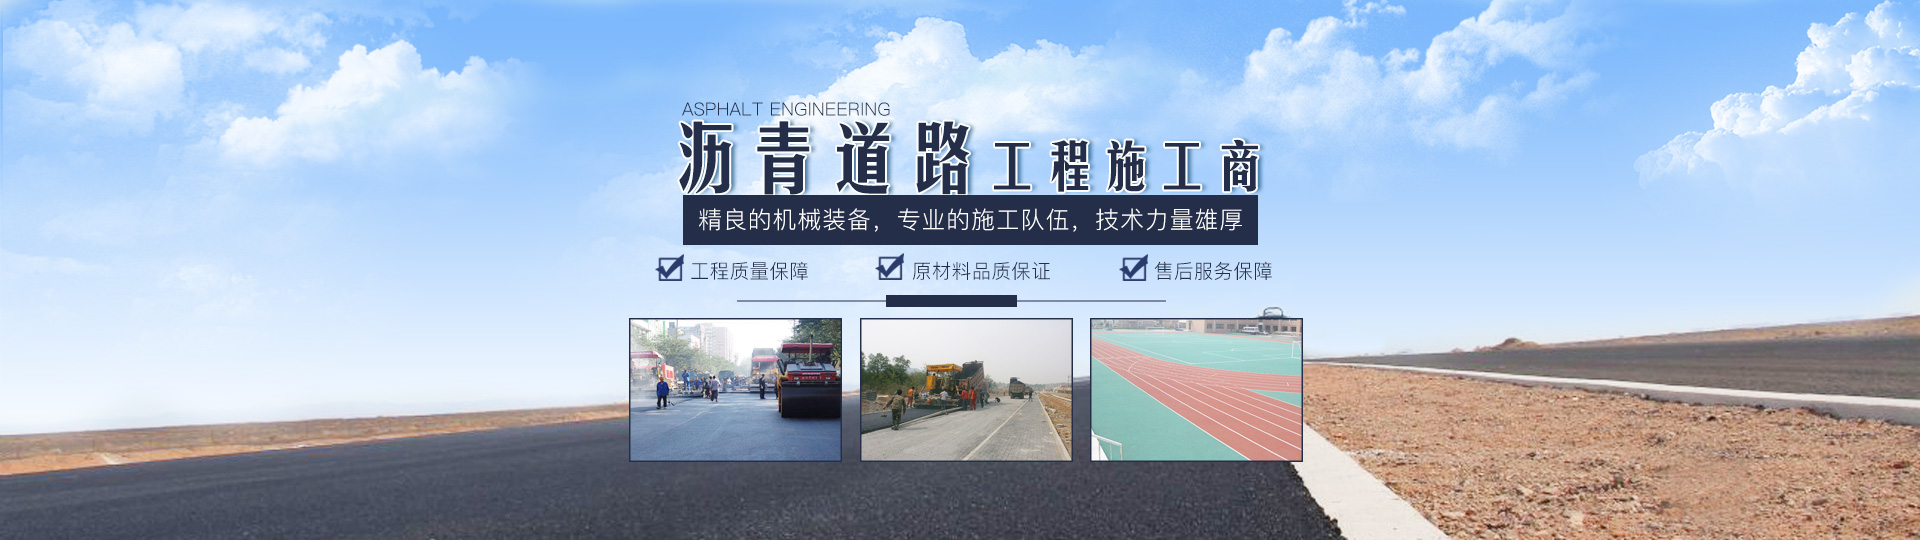 湖南星远工程有限公司_长沙市政工程施工承包|长沙公路工程承包|长沙绿化工程承包